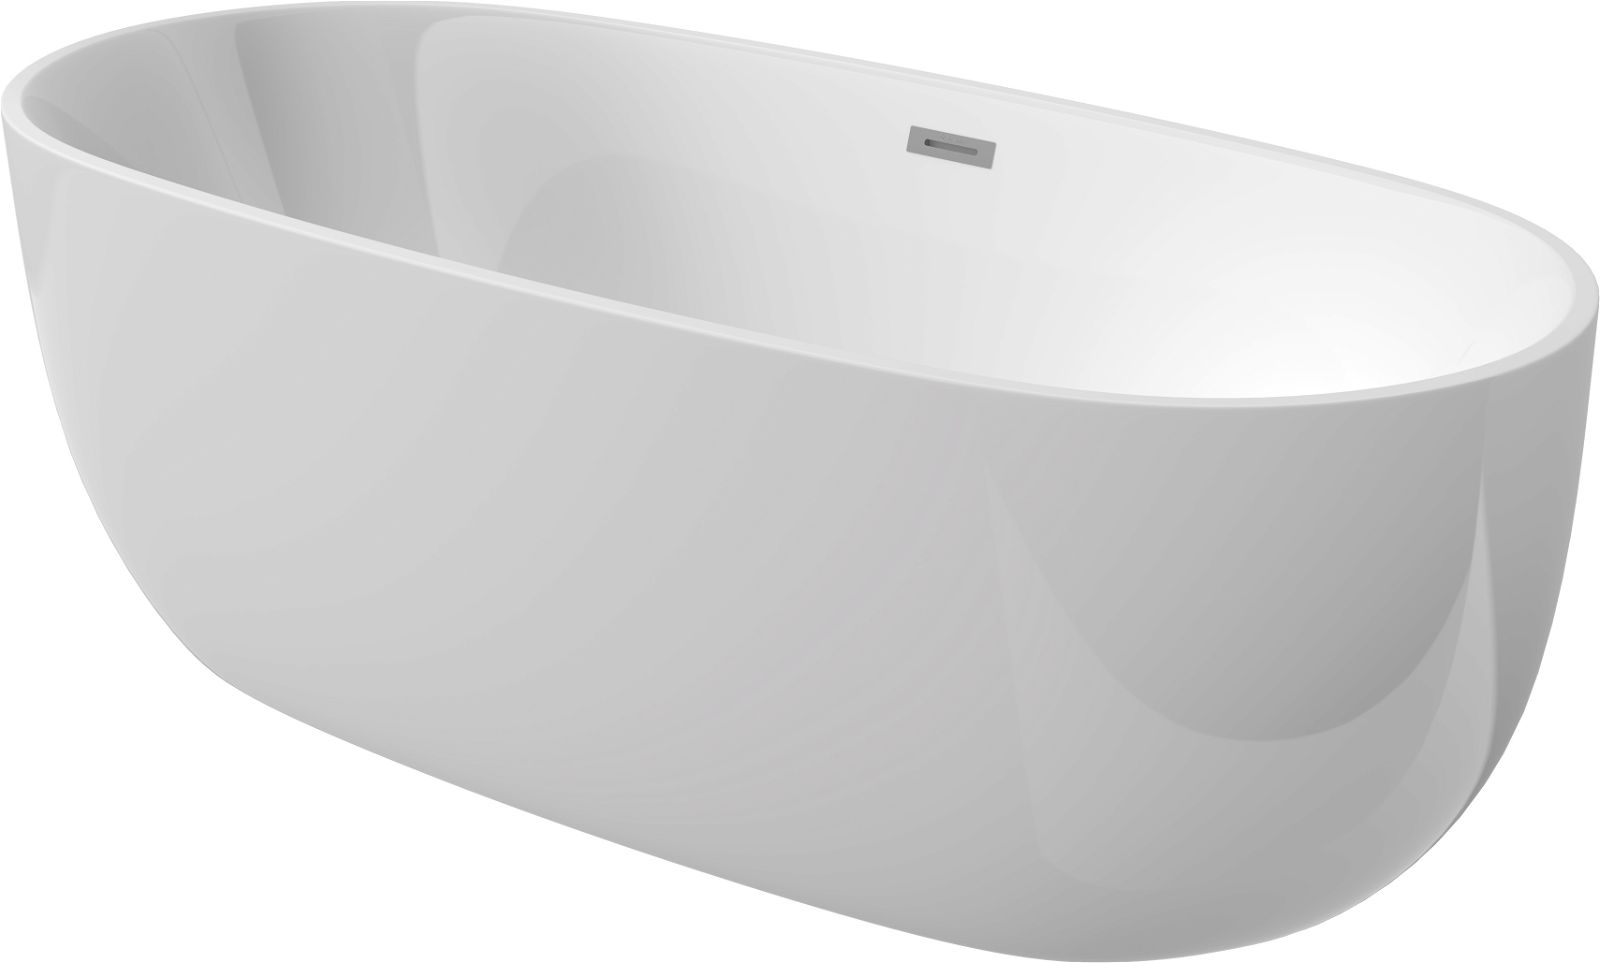 Acrylic bathtub, freestanding, oval - 150 cm - KDU_015W - Główne zdjęcie produktowe